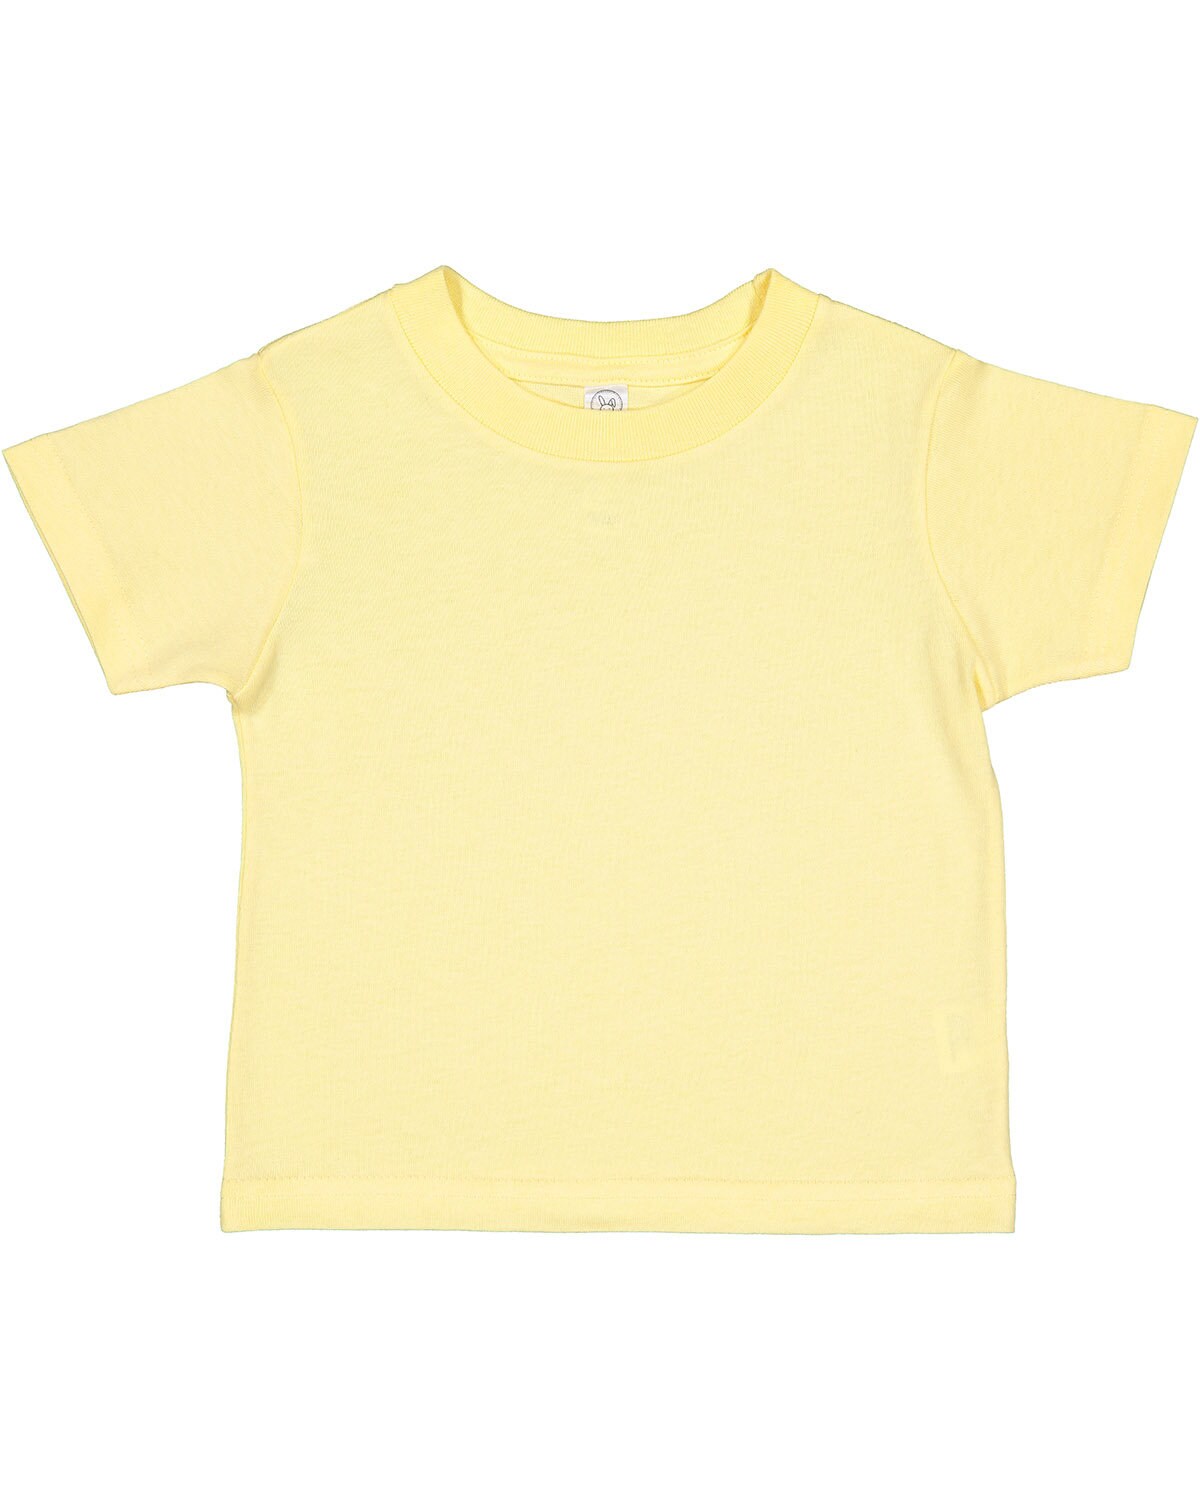 RABBIT SKINS Toddler Cotton Jersey T-Shirt, RS3301 | Baby & Toddler ...